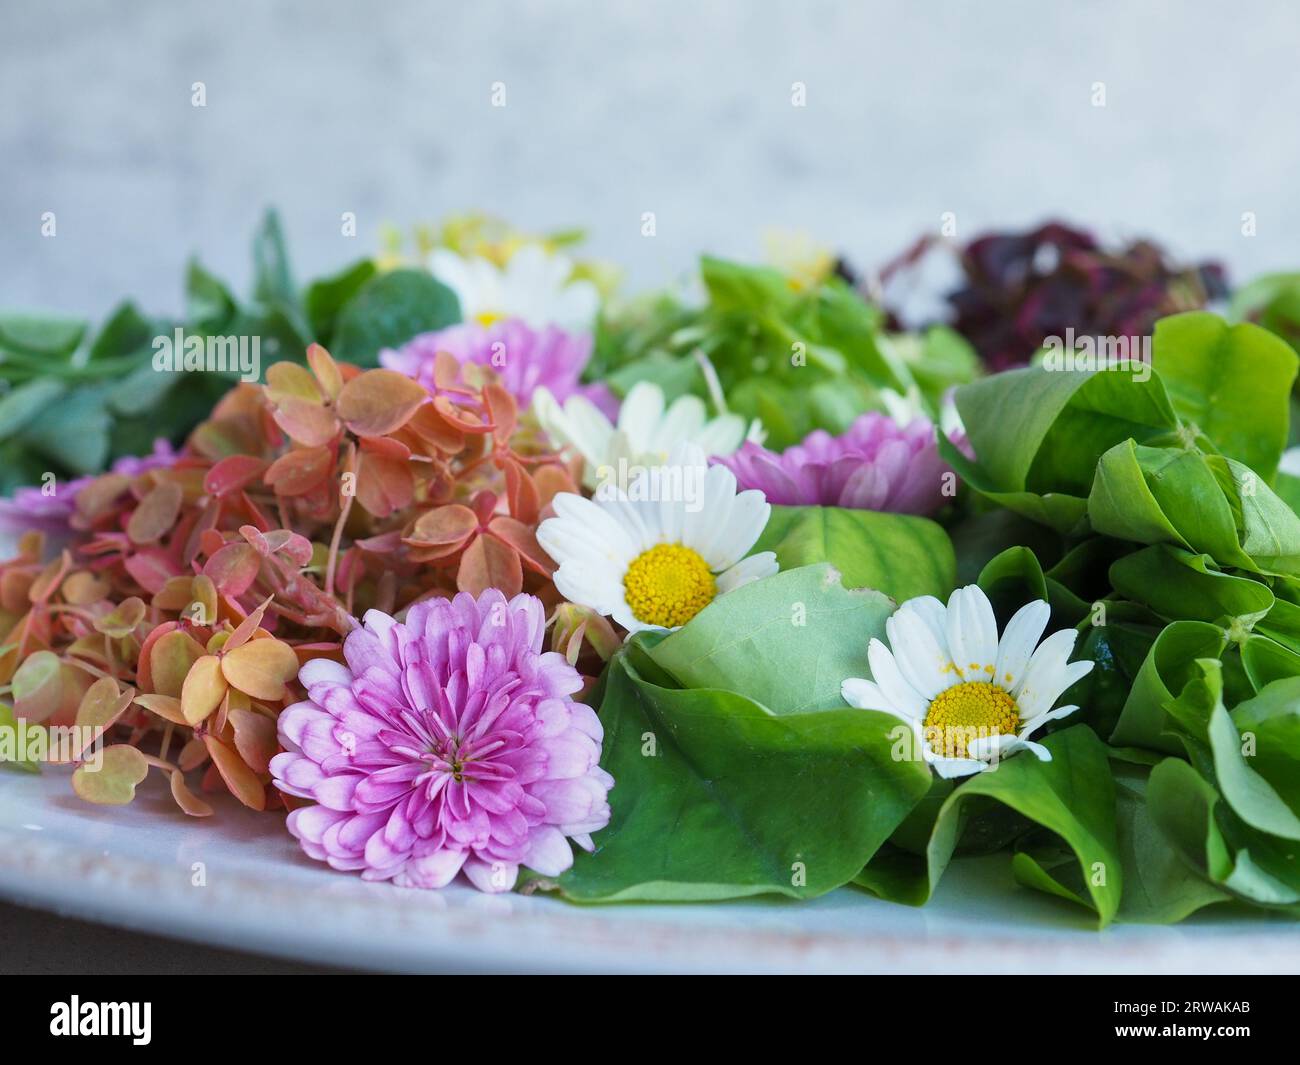 Nahaufnahme eines hübschen Salats mit essbaren Blumen und Blättern, die nahrhafte, hausgemachte, nachhaltige pflanzliche Nahrung für den Frühlings- und Sommeressen darstellen Stockfoto